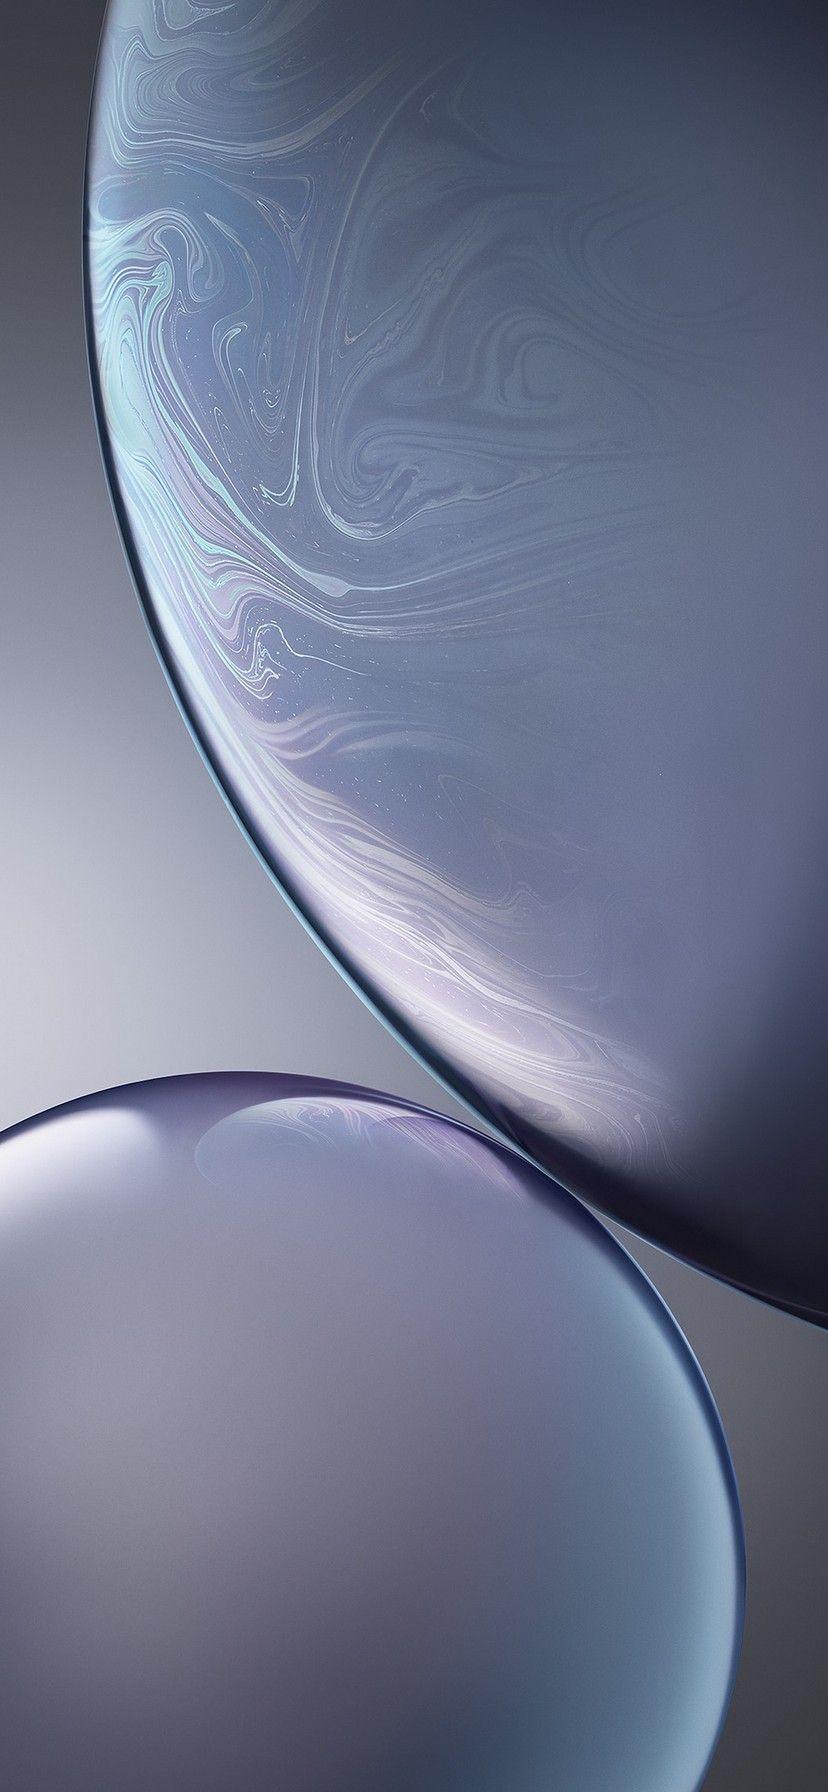 Apple iPhone XR Wallpapers - Top Những Hình Ảnh Đẹp